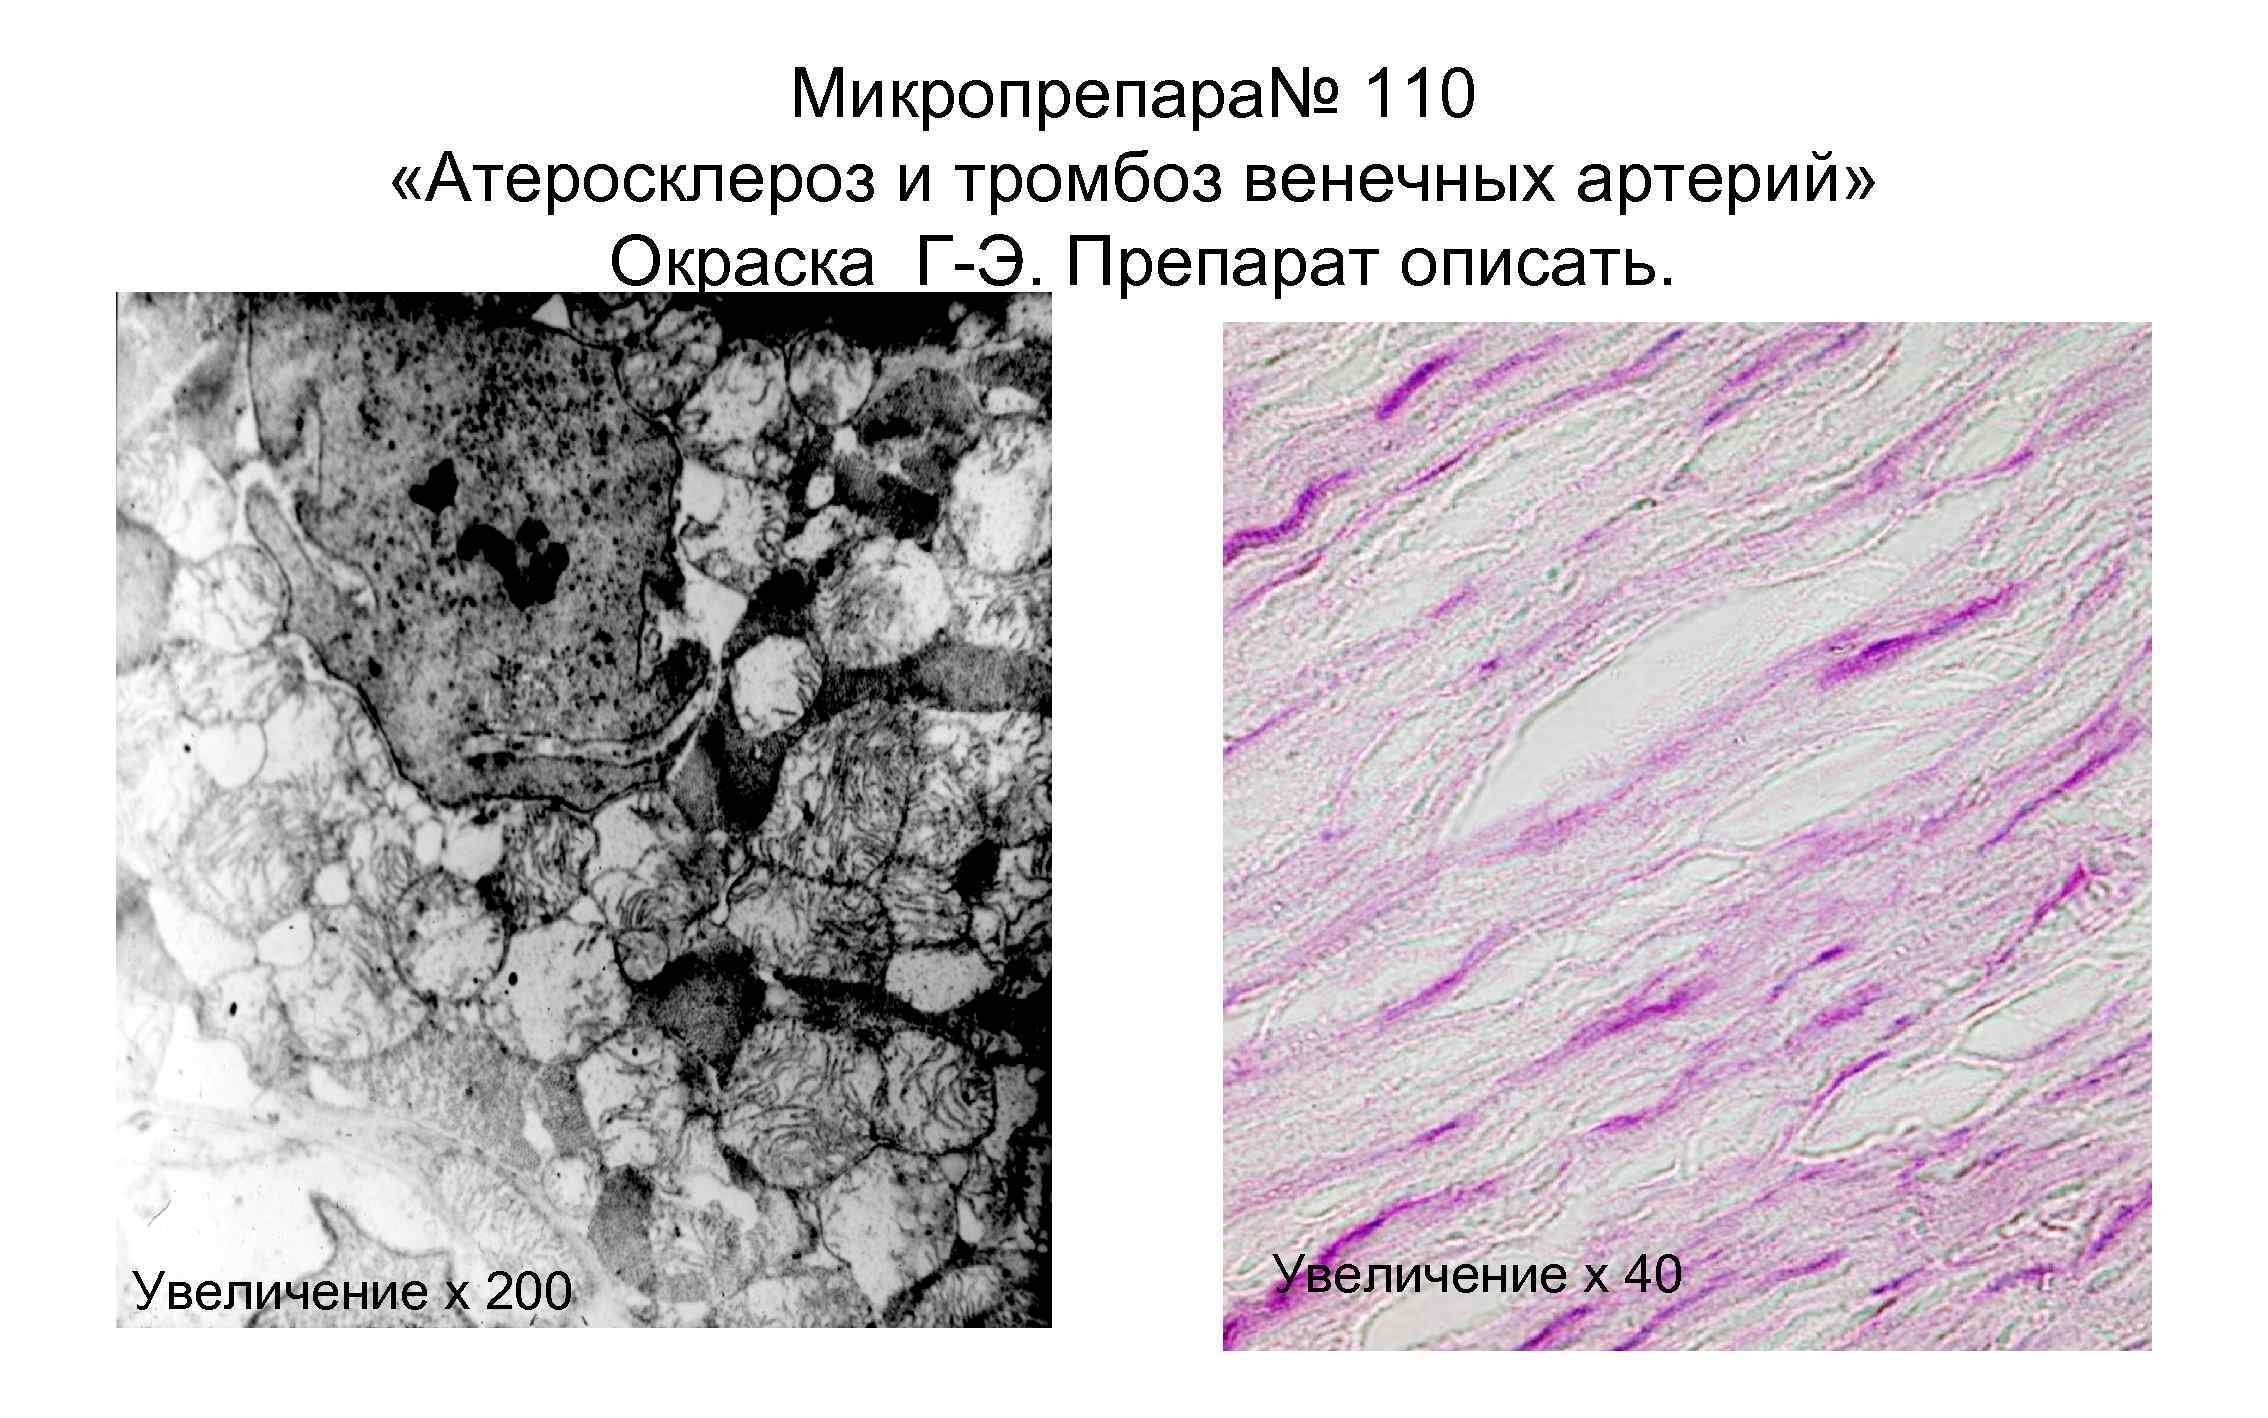 Тромб микропрепарат. Атеросклероз венечной артерии микропрепарат. Атеросклероз артерий гистология. Атеросклероз венечной артерии сердца микропрепарат. Стенозирующий атеросклероз микропрепарат.